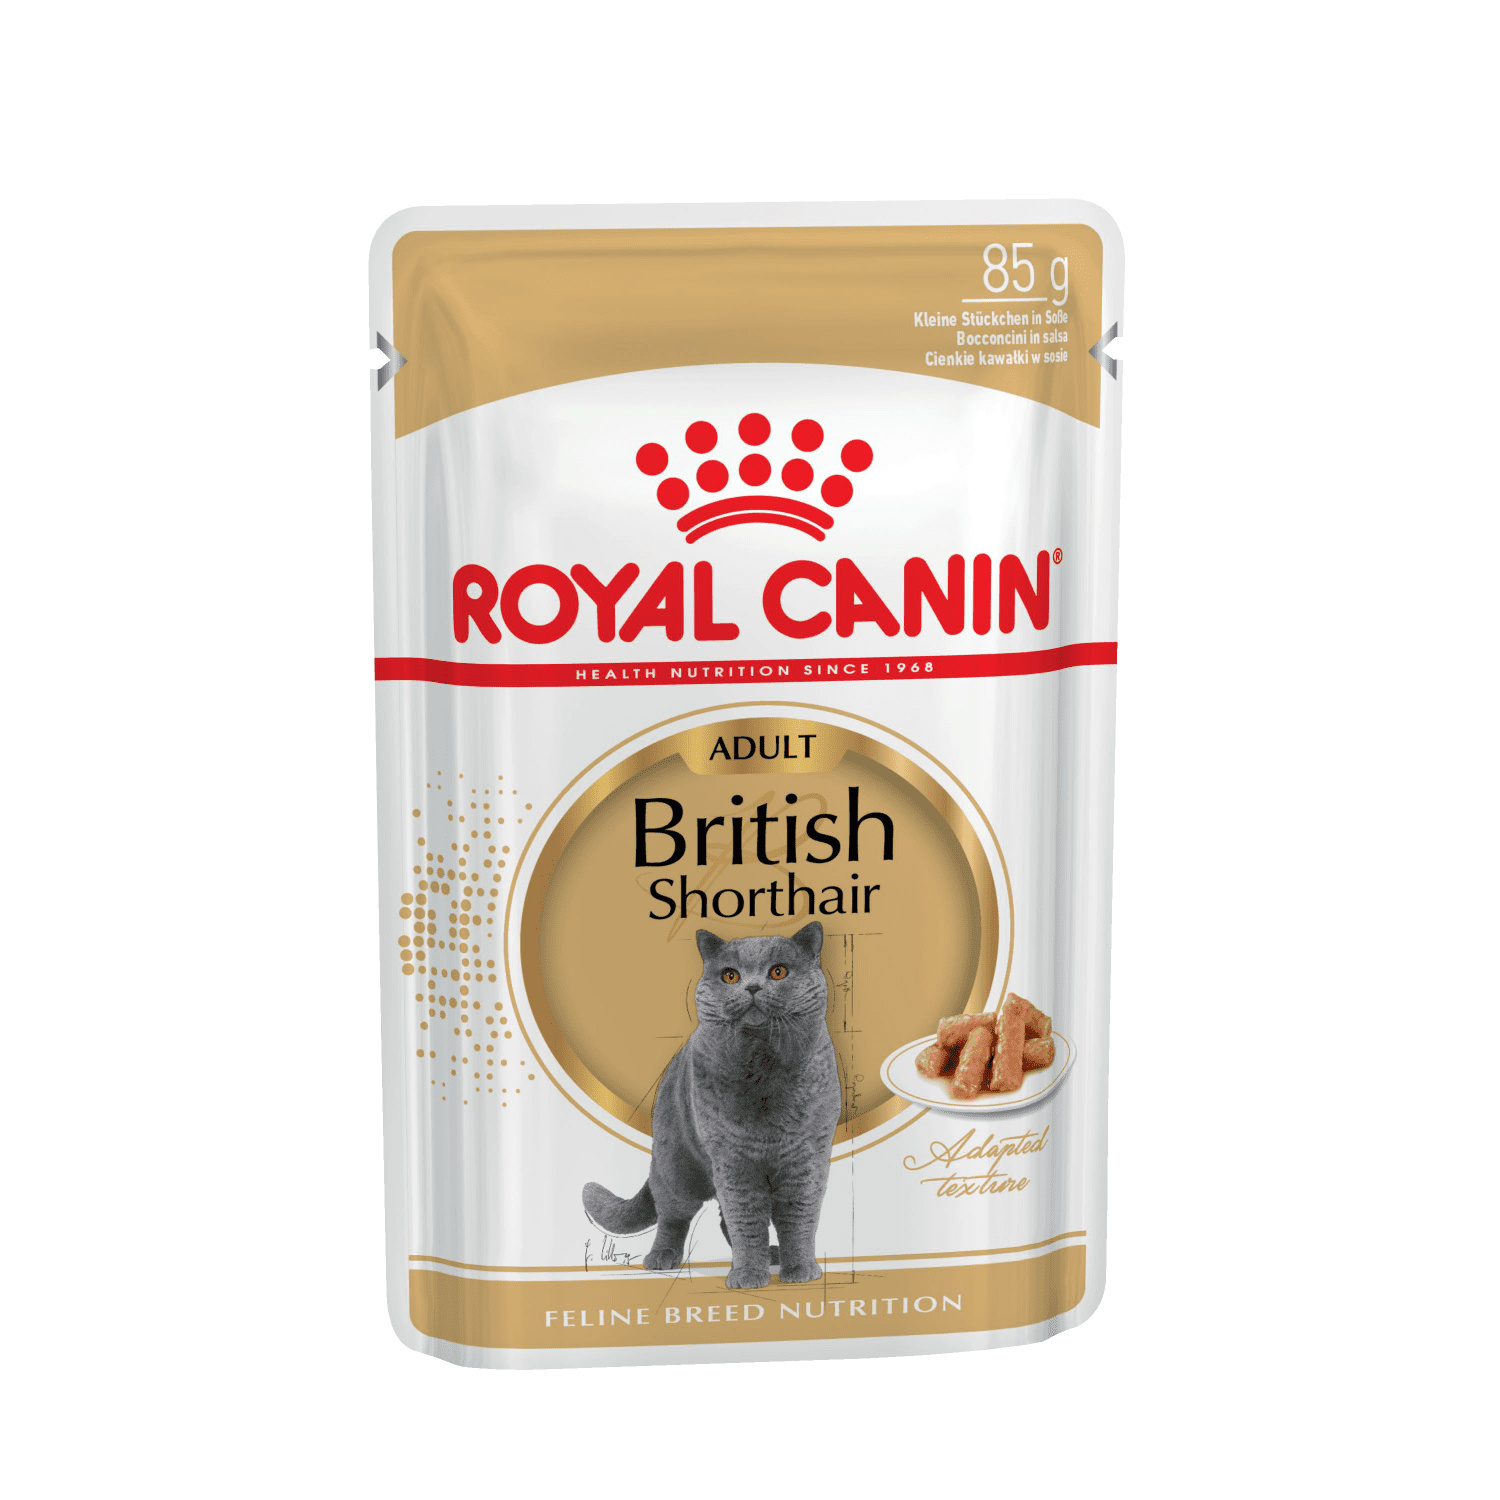 Royal Canin паучи Royal Canin паучи паучи кусочки в соусе для Британской короткошерстной кошки старше 12 месяцев (85 г) royal canin паучи royal canin паучи кусочки в соусе для кошек 1 7 лет 85 г